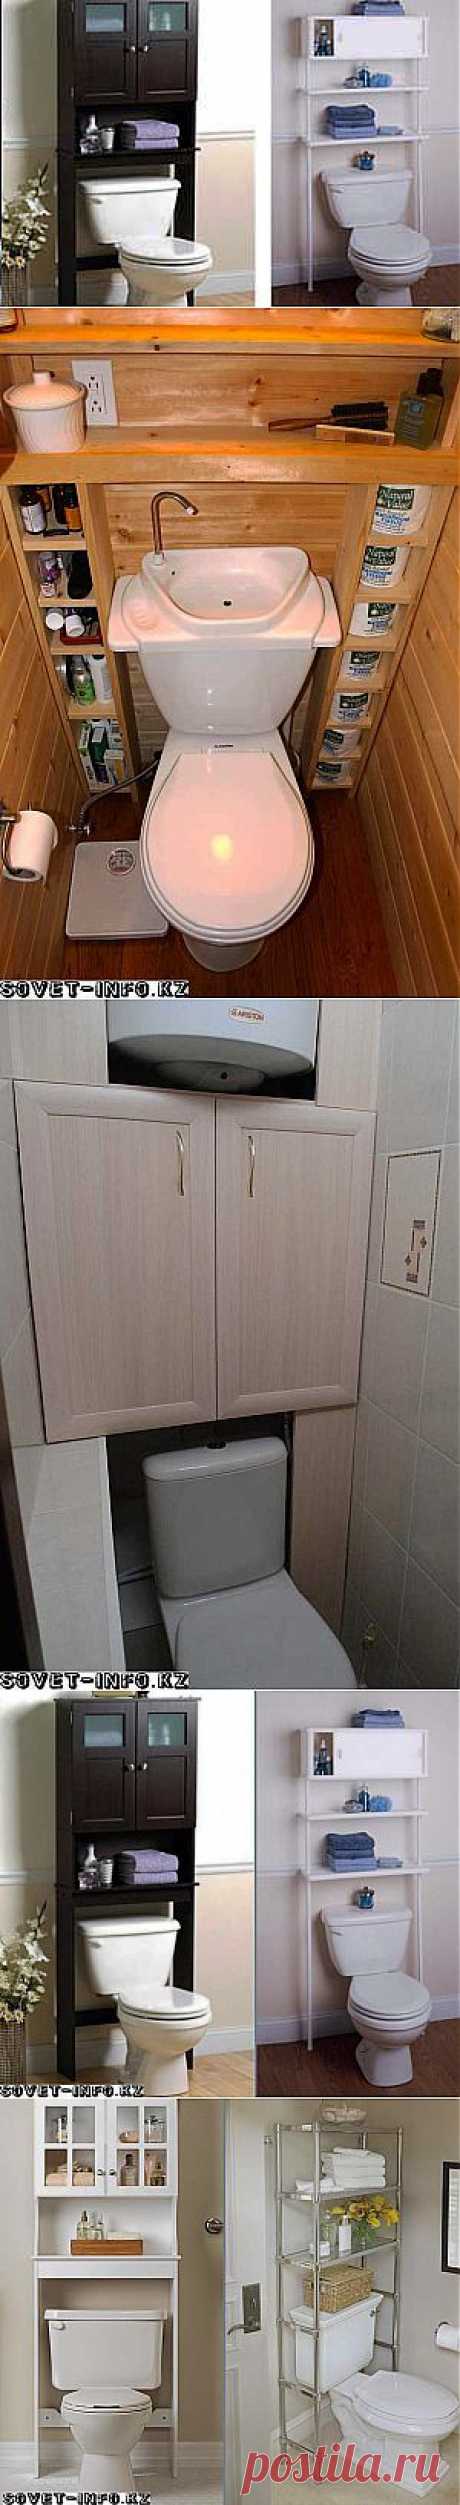 Идеи для маленьких туалетов